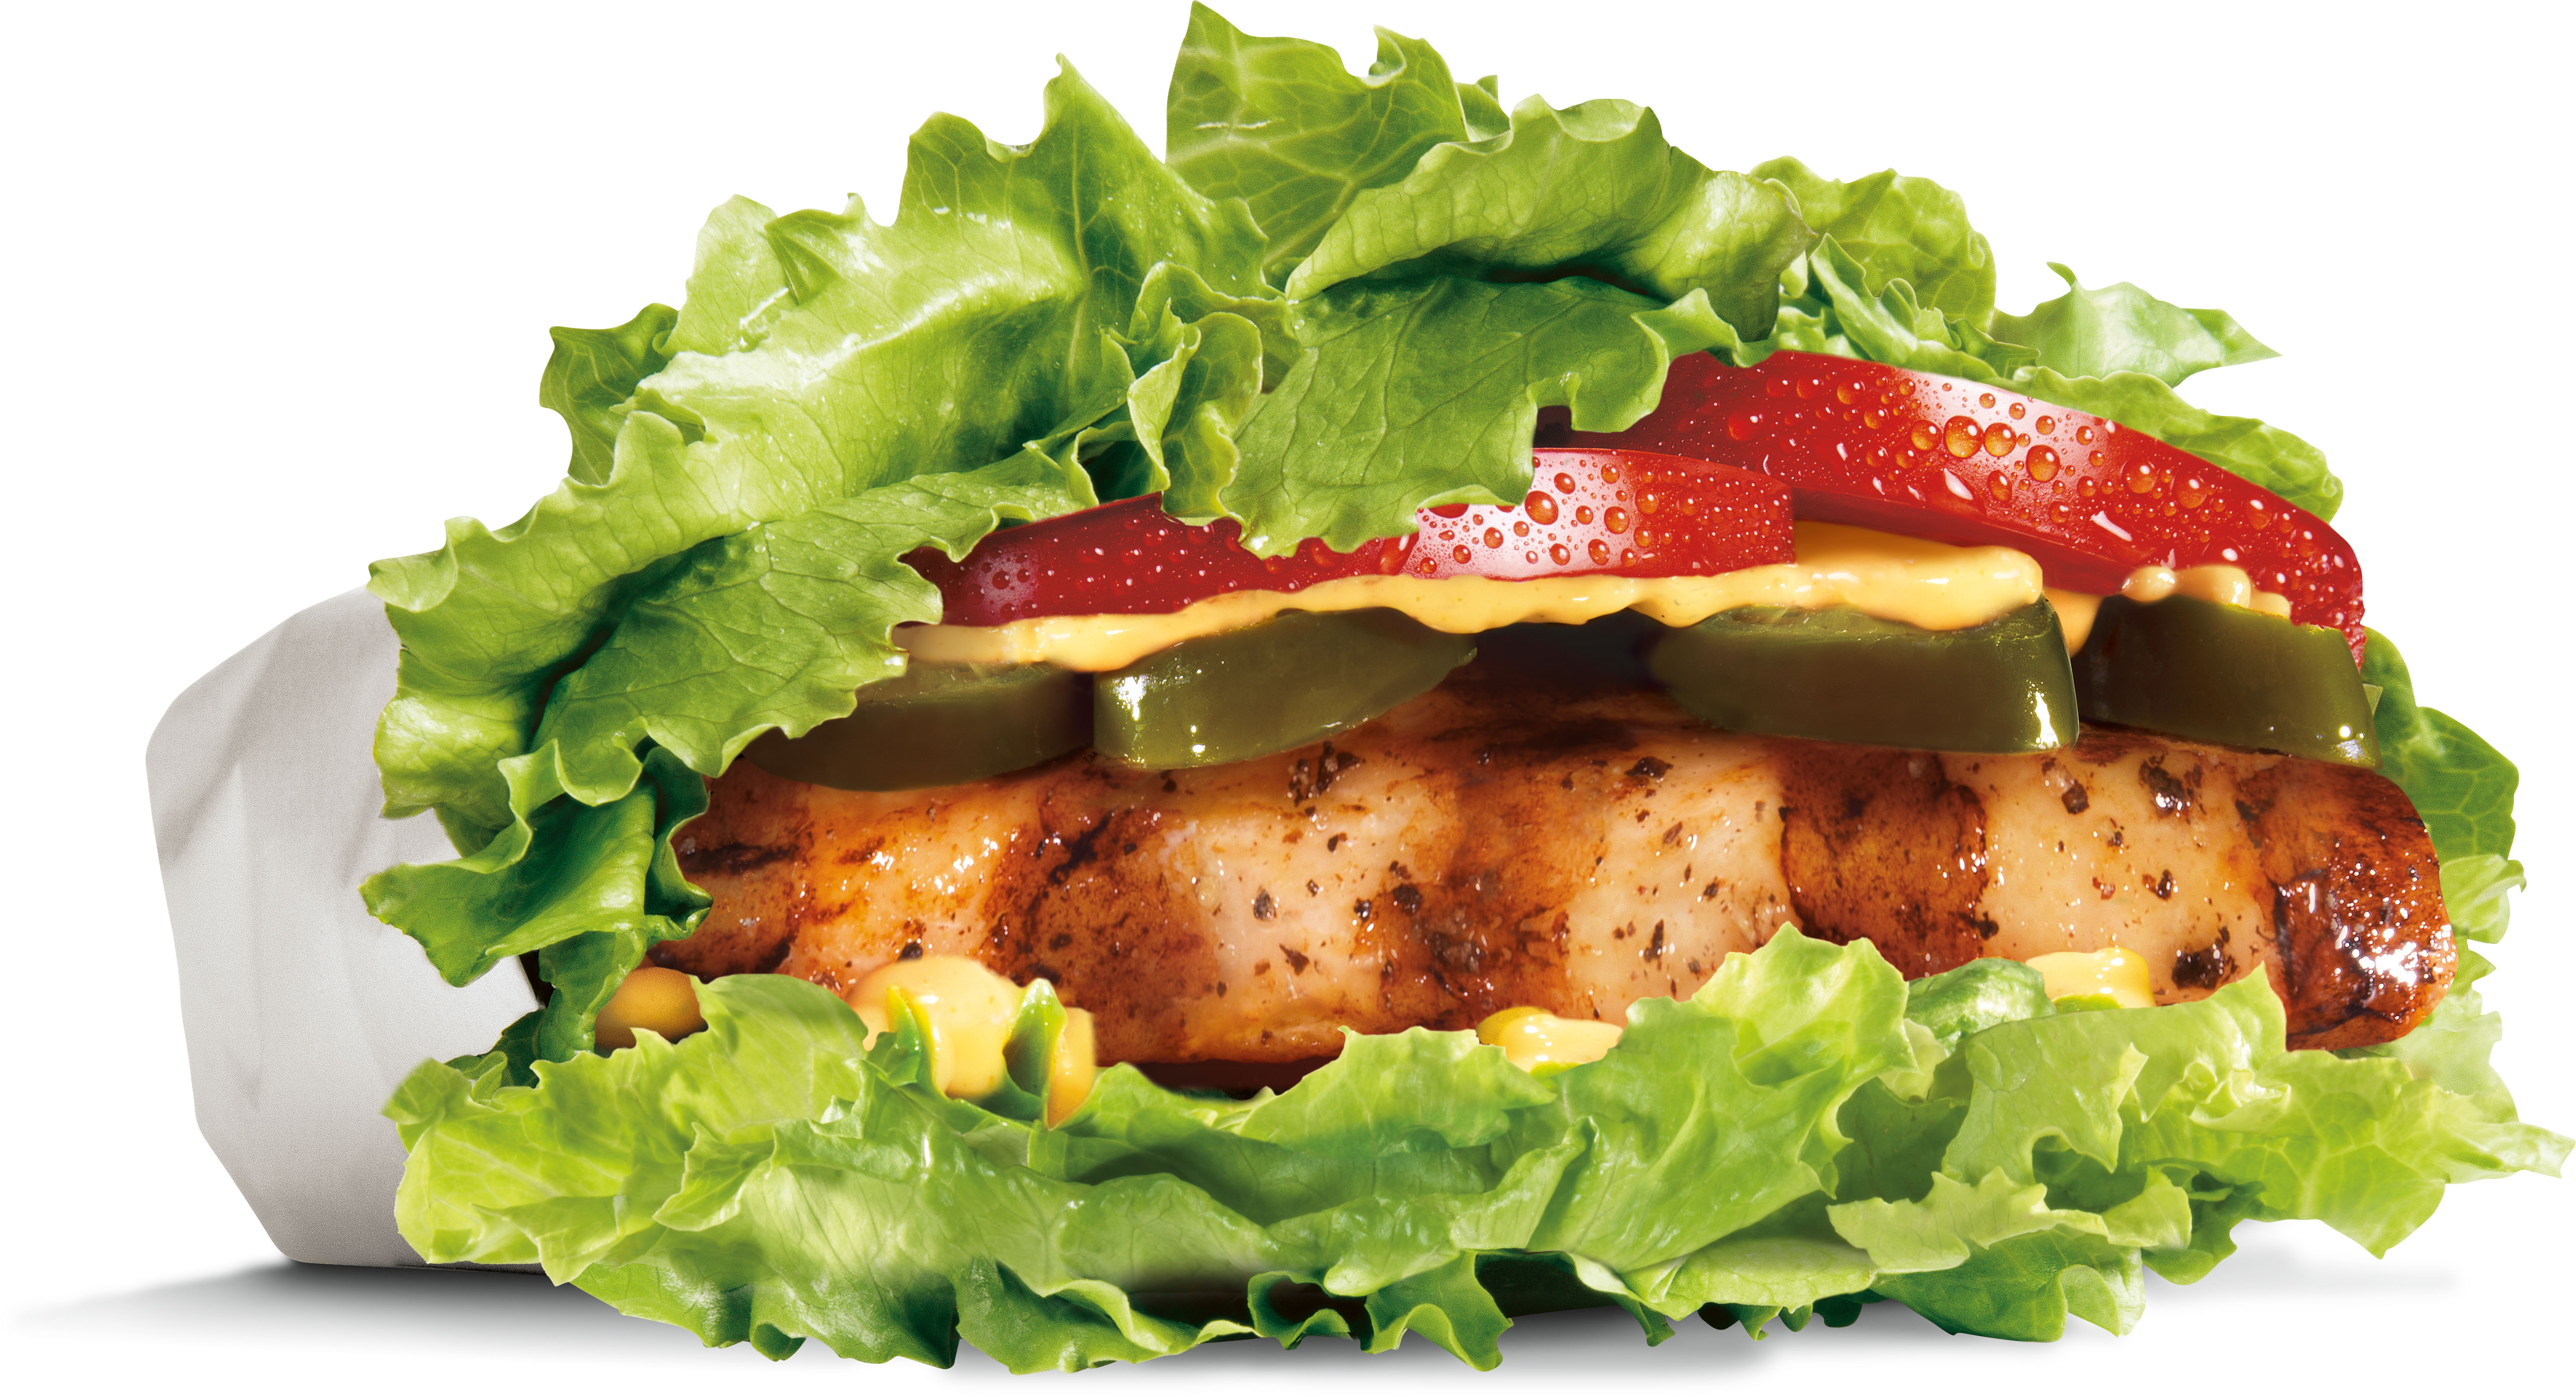 Чикен клаб. Burger. Carls Jr. Логотип Carl's Jr бургеры.